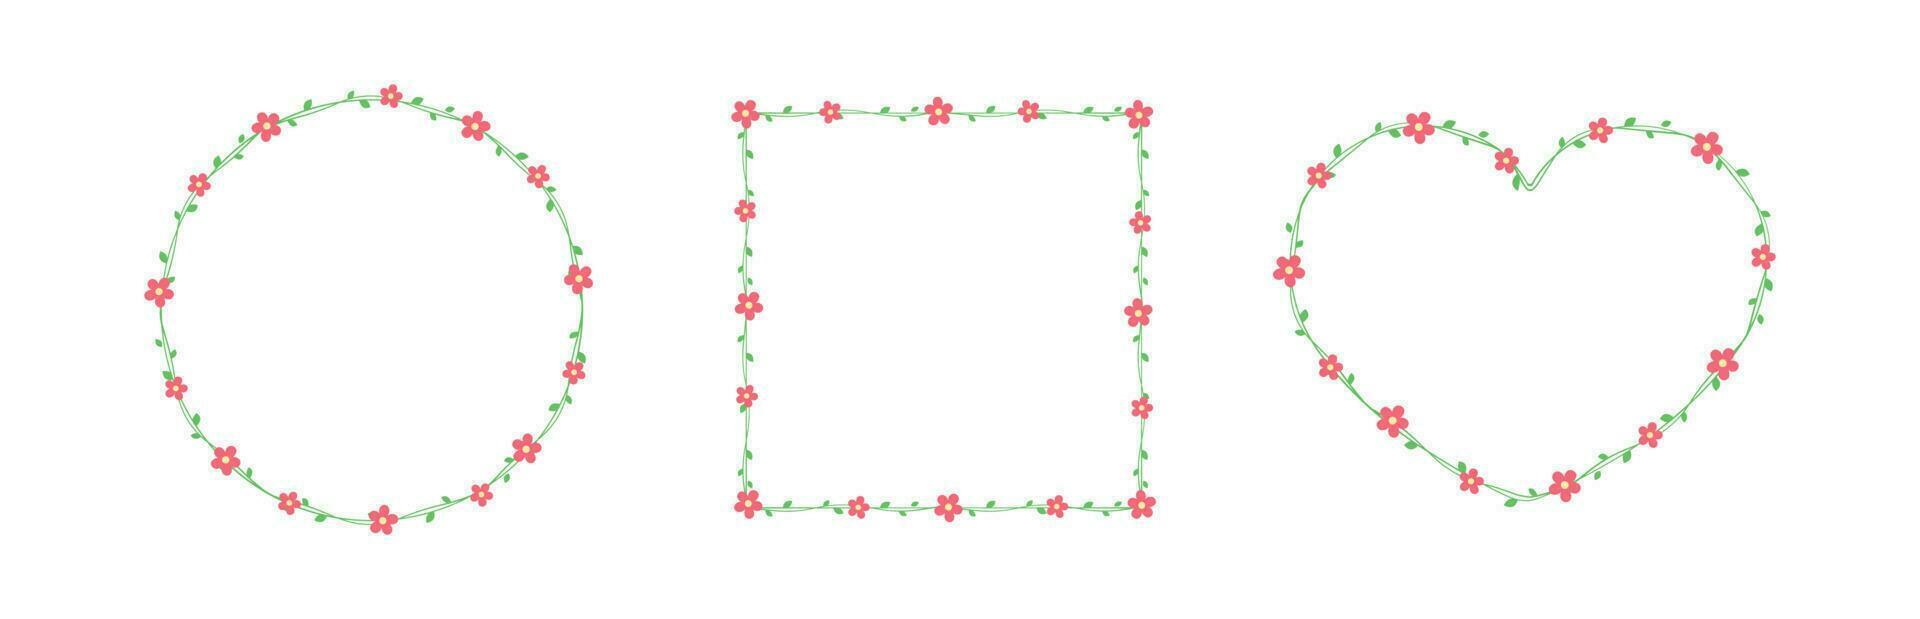 rojo flores con verde hojas marcos y fronteras colocar, floral botánico diseño elemento vector ilustración